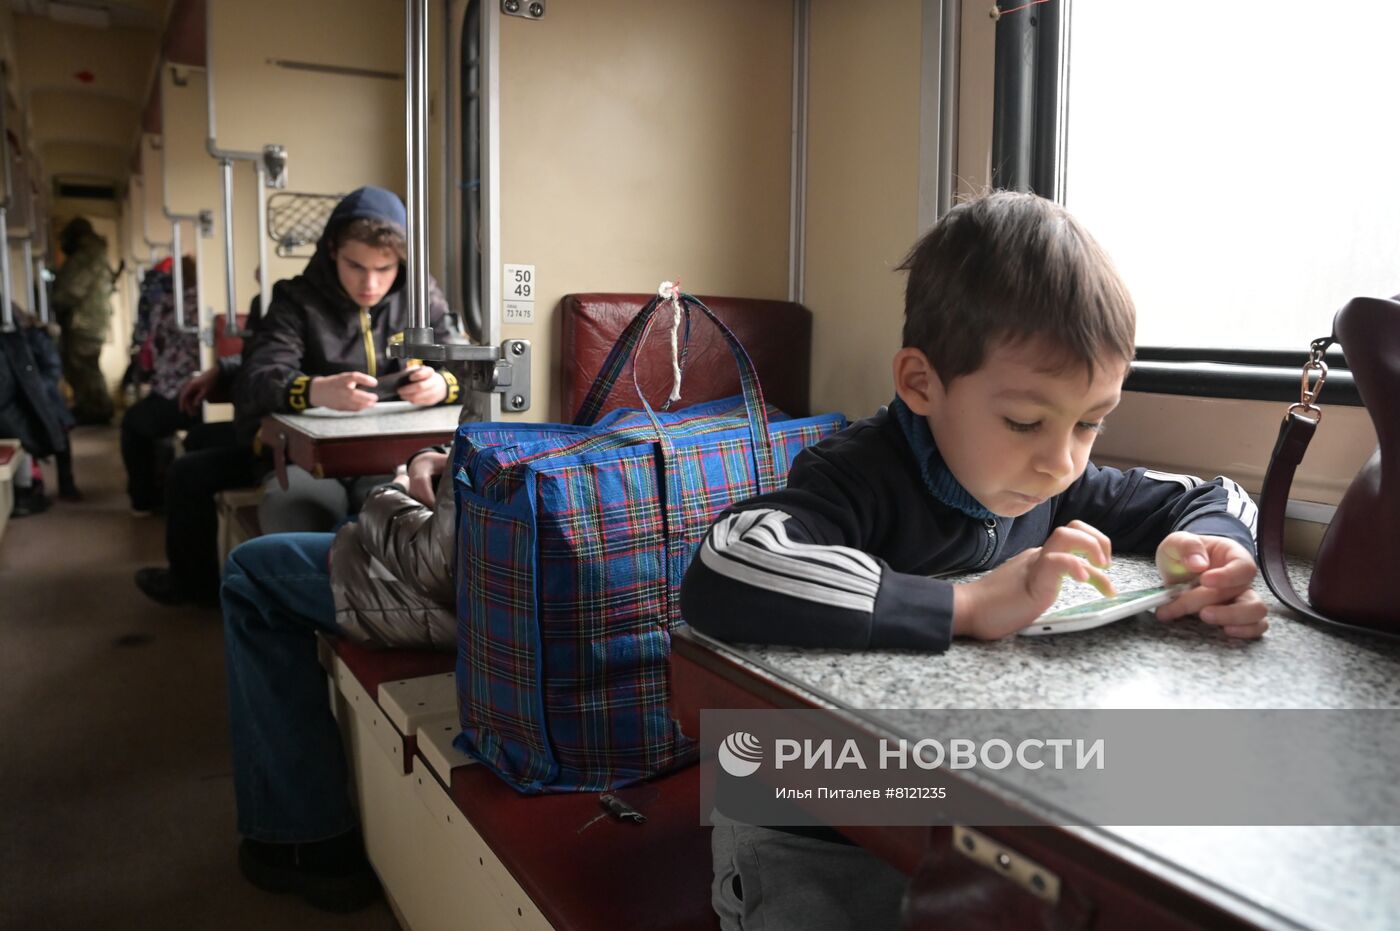 Эвакуация гражданского населения ДНР со станции "Донецк-2"